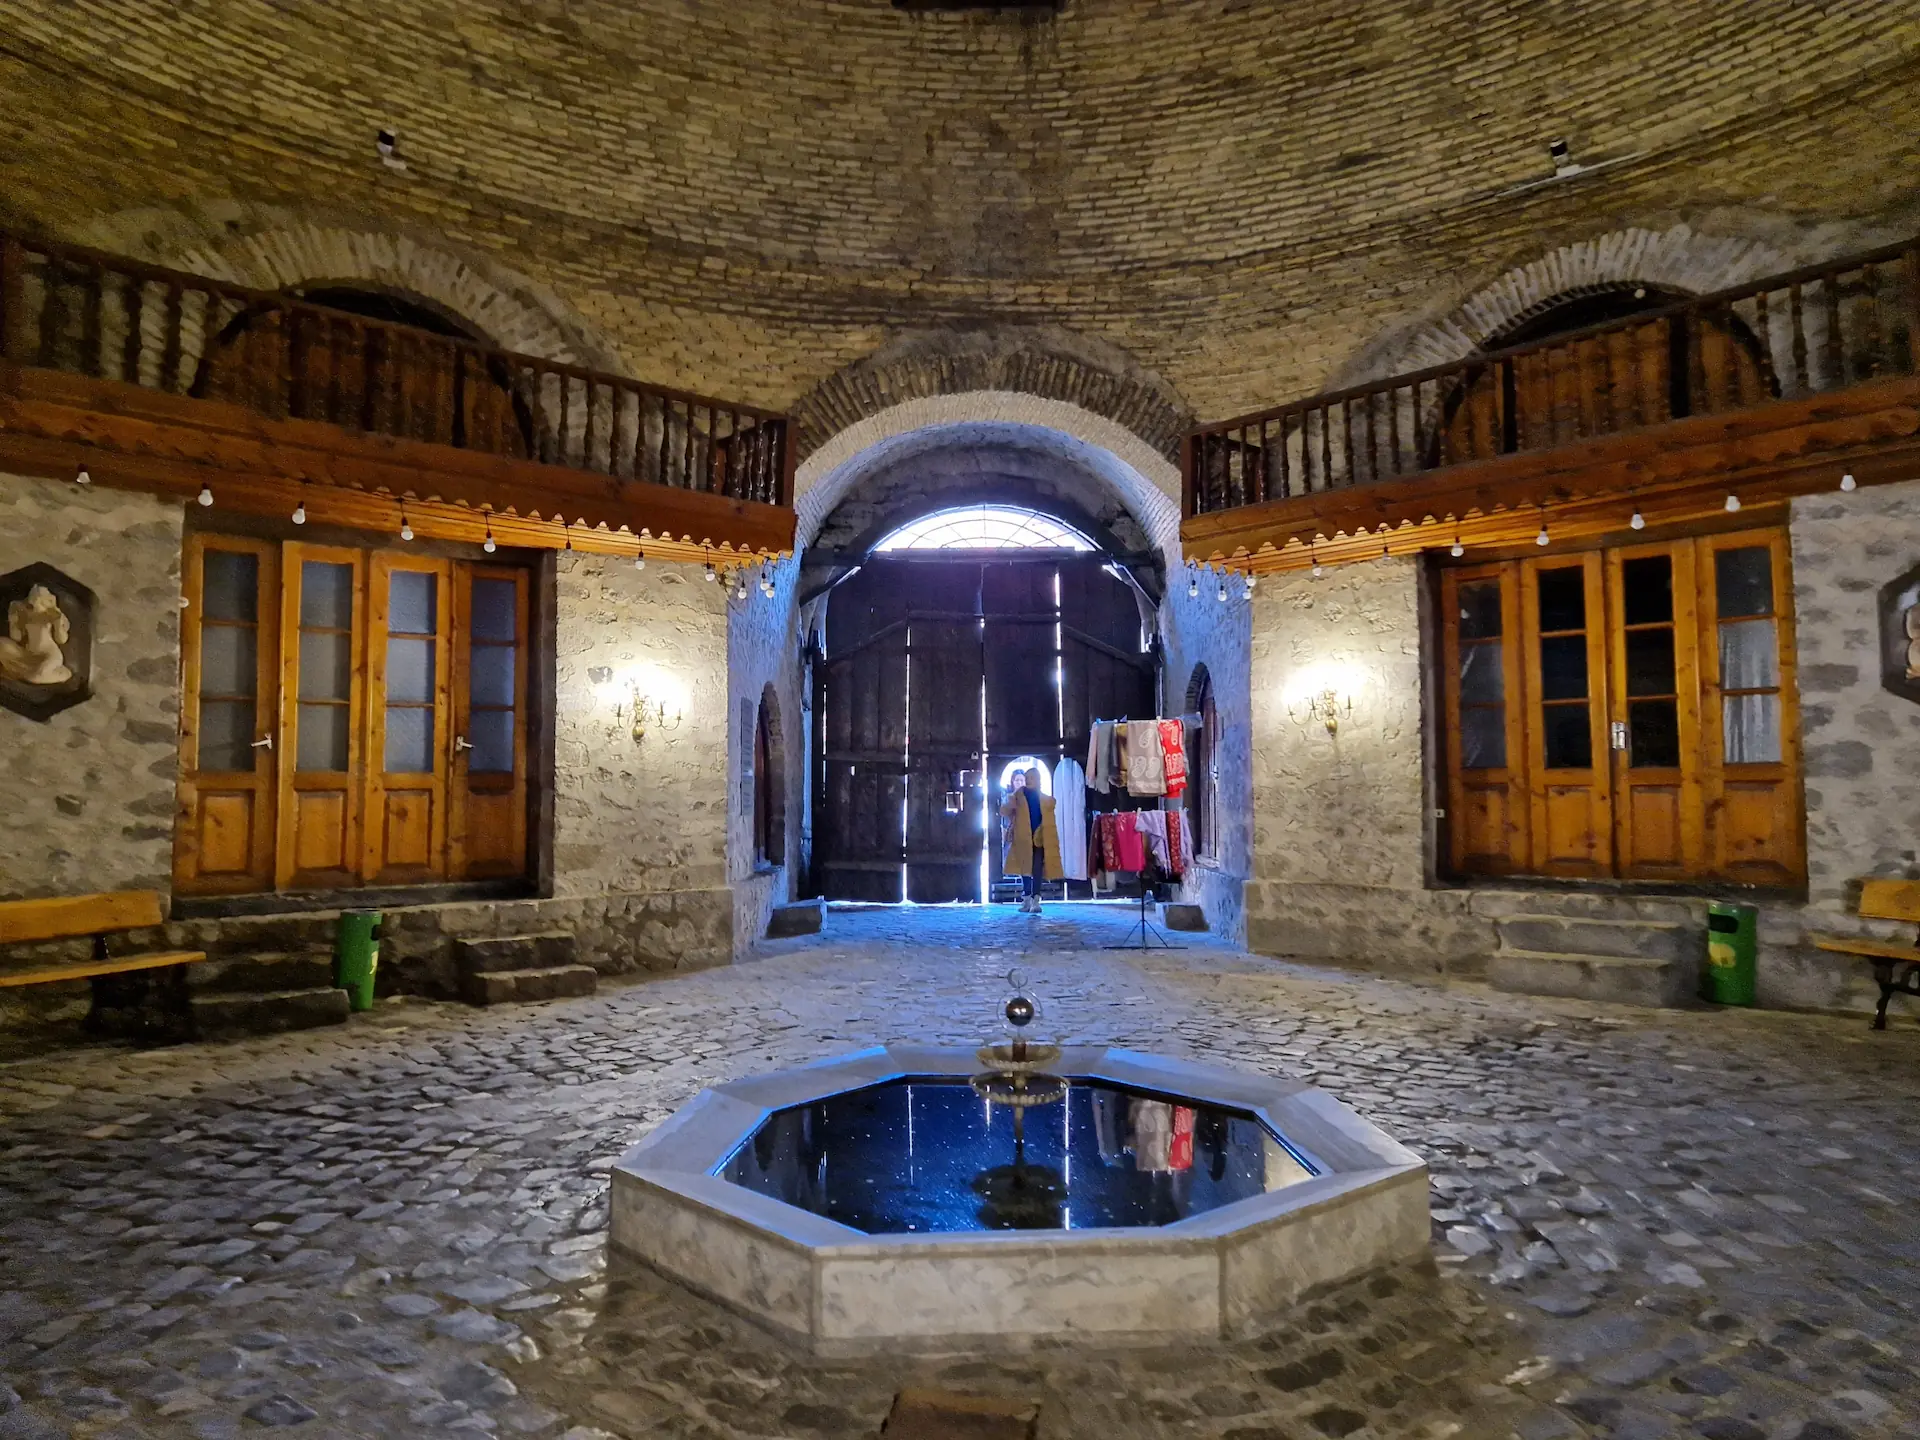 Le 'hall d'entrée' du caravansérail. Une pièce ronde avec une petite fontaine en son milieu et un balcon intérieur.